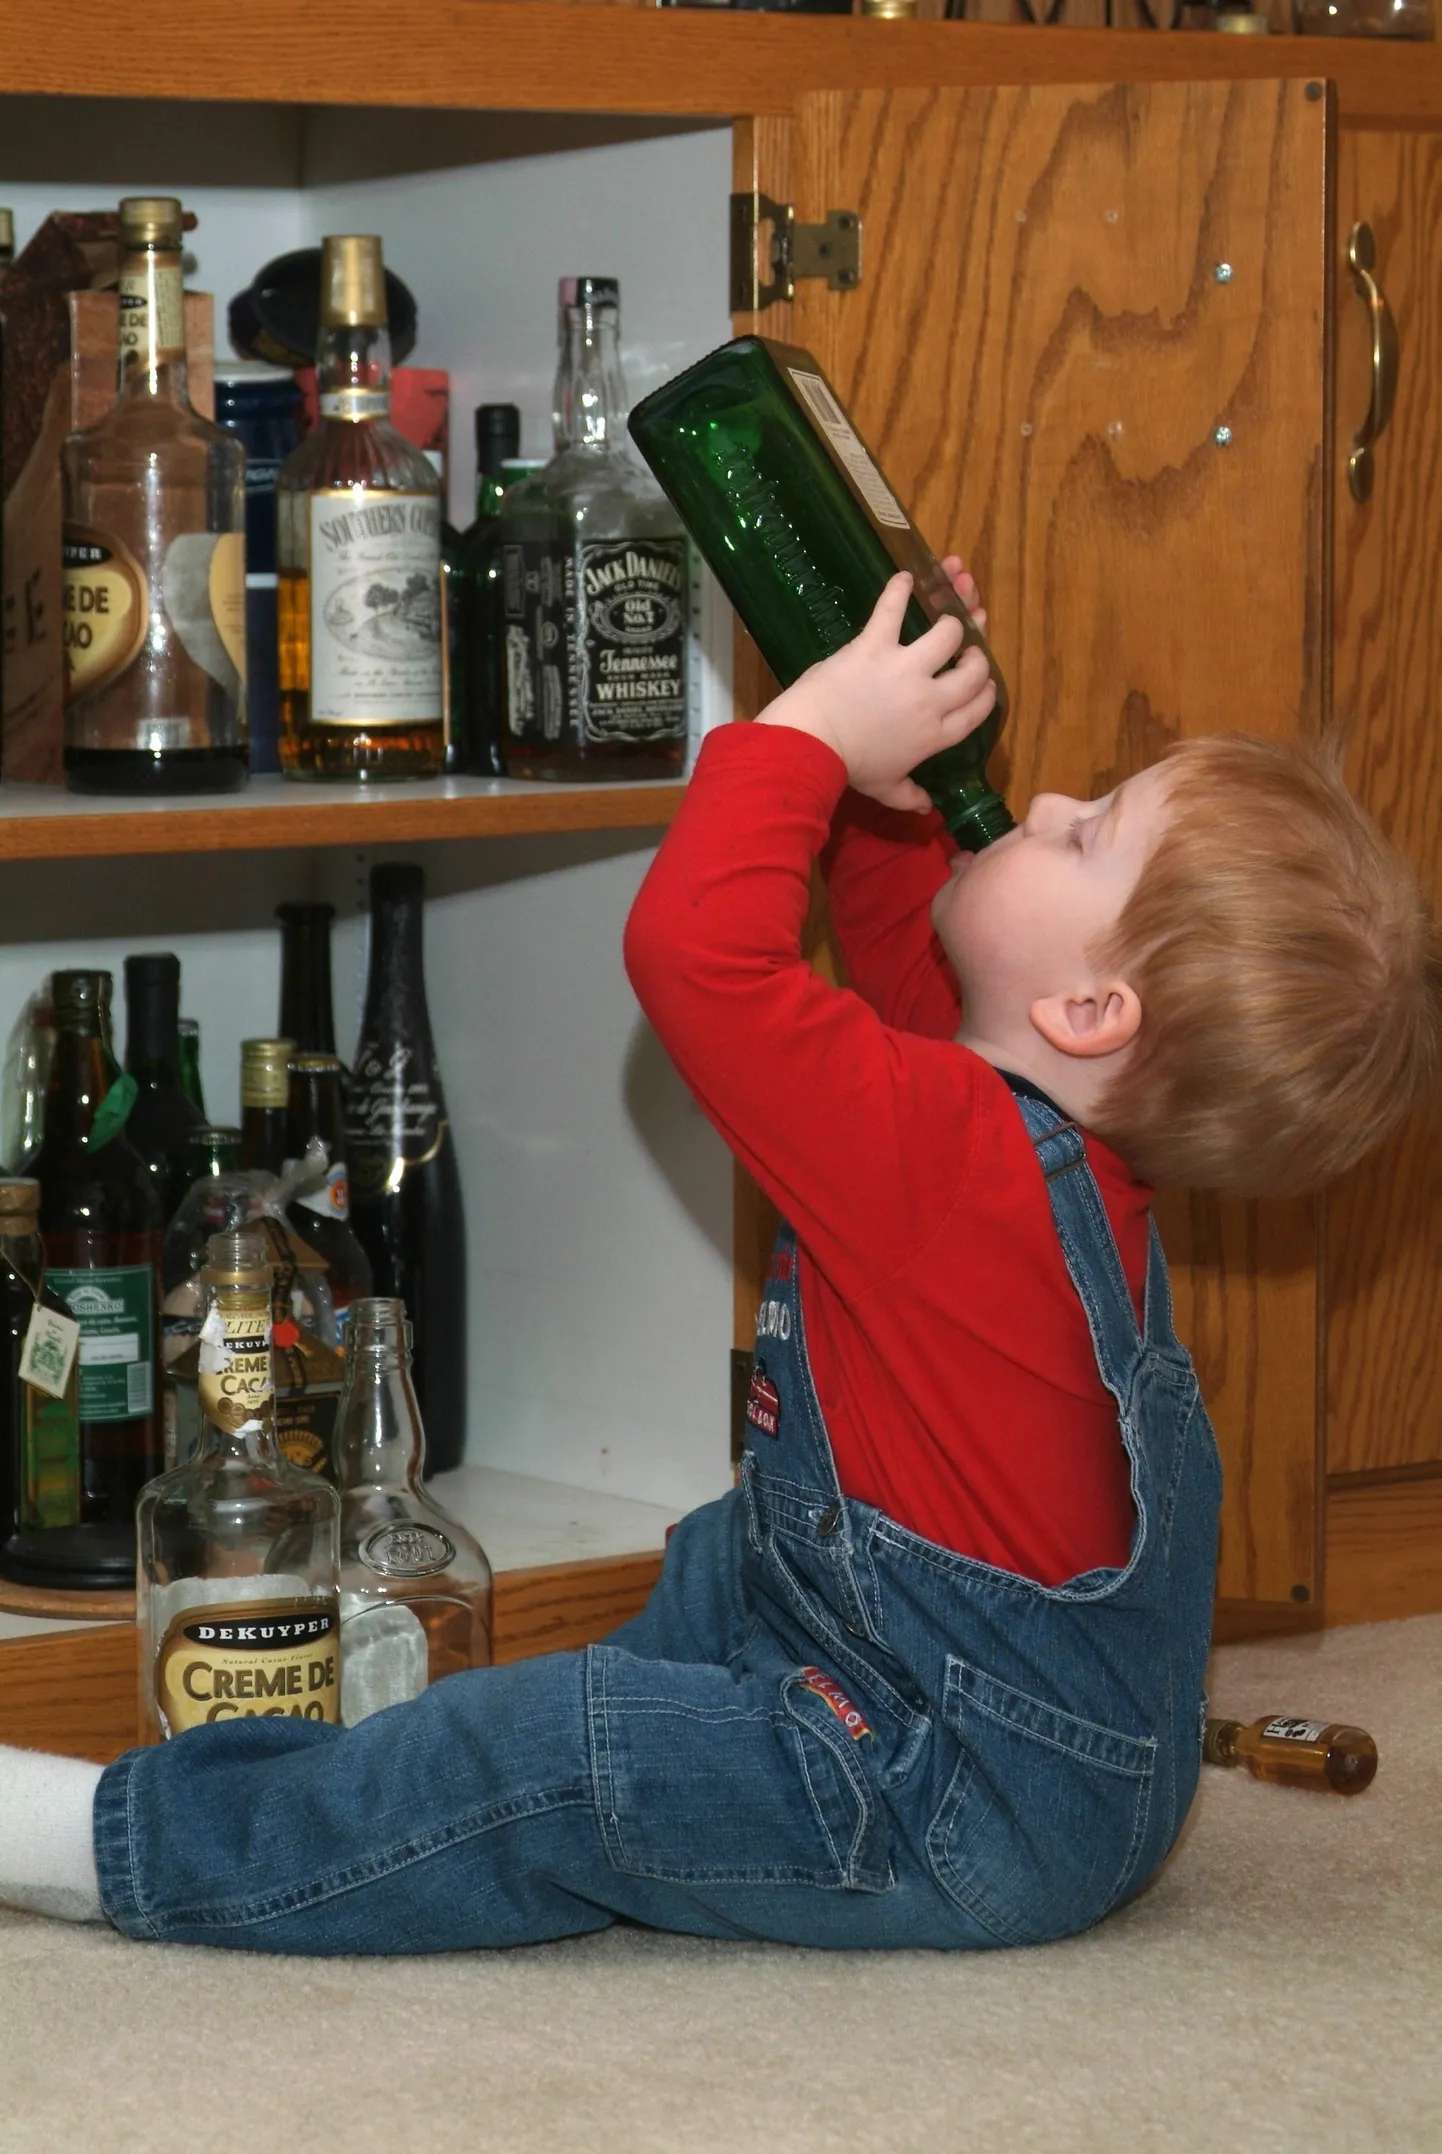 Pilt on illustreeriv ja see pudelitele ligi lastud kahene poiss pole selle looga seotud.